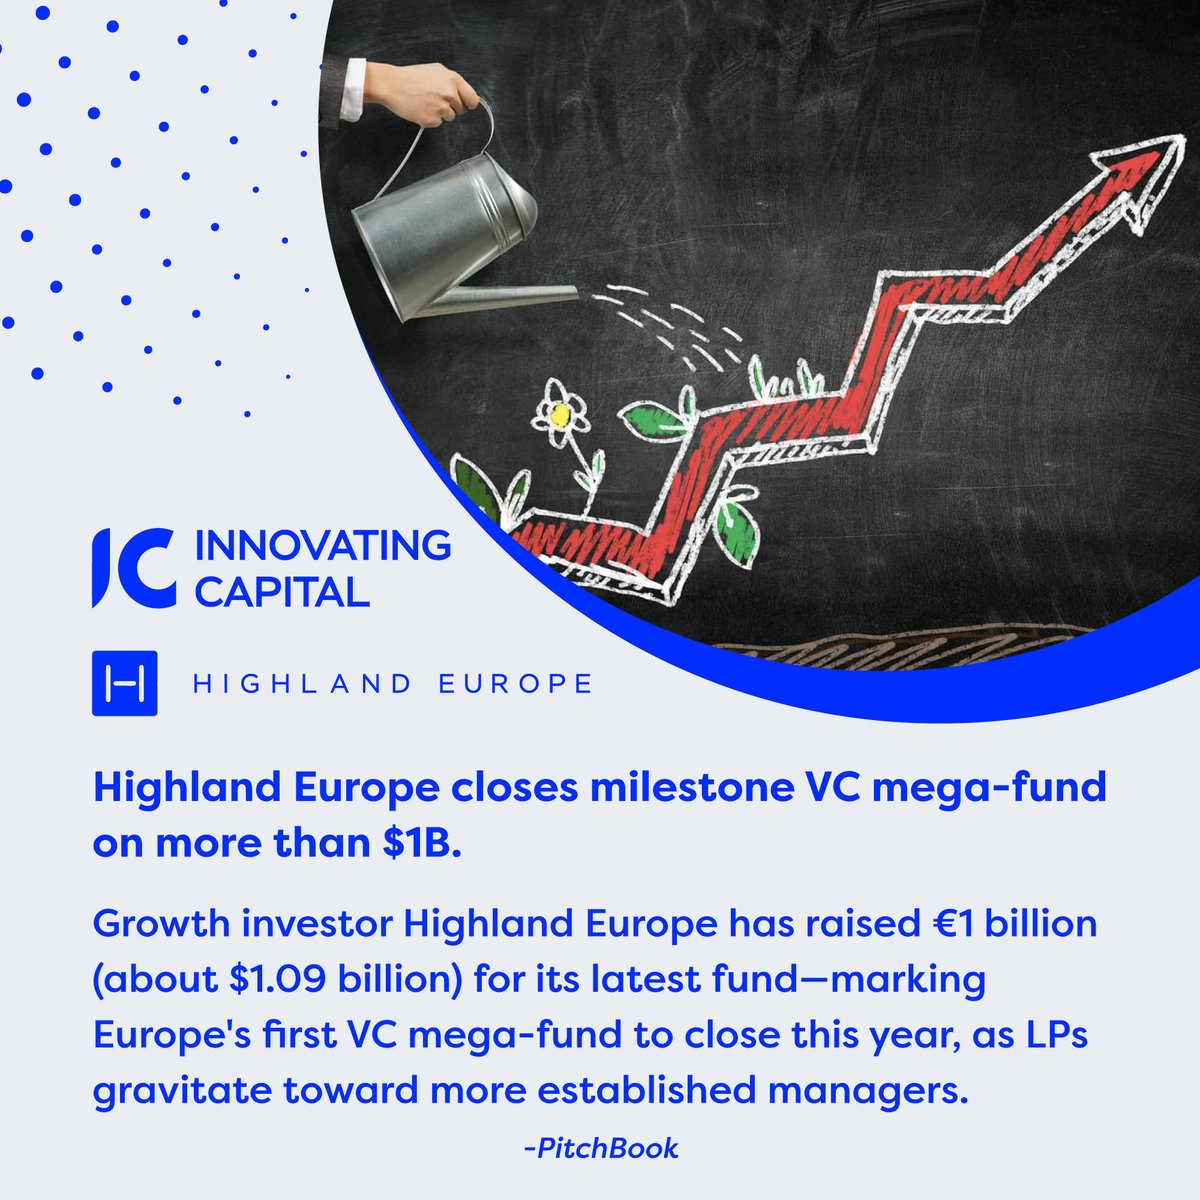 Highland Europe closes milestone VC mega-fund on more than $1B. 
#HighlandEurope #VentureCapital #MegaFund #EuropeVC #GrowthInvesting #Fundraising #LPs #EstablishedManagers #StartupInvesting #VCFunding #BusinessGrowth #InnovativeInvesting #1BFund #wednesdaythought #Wednesday